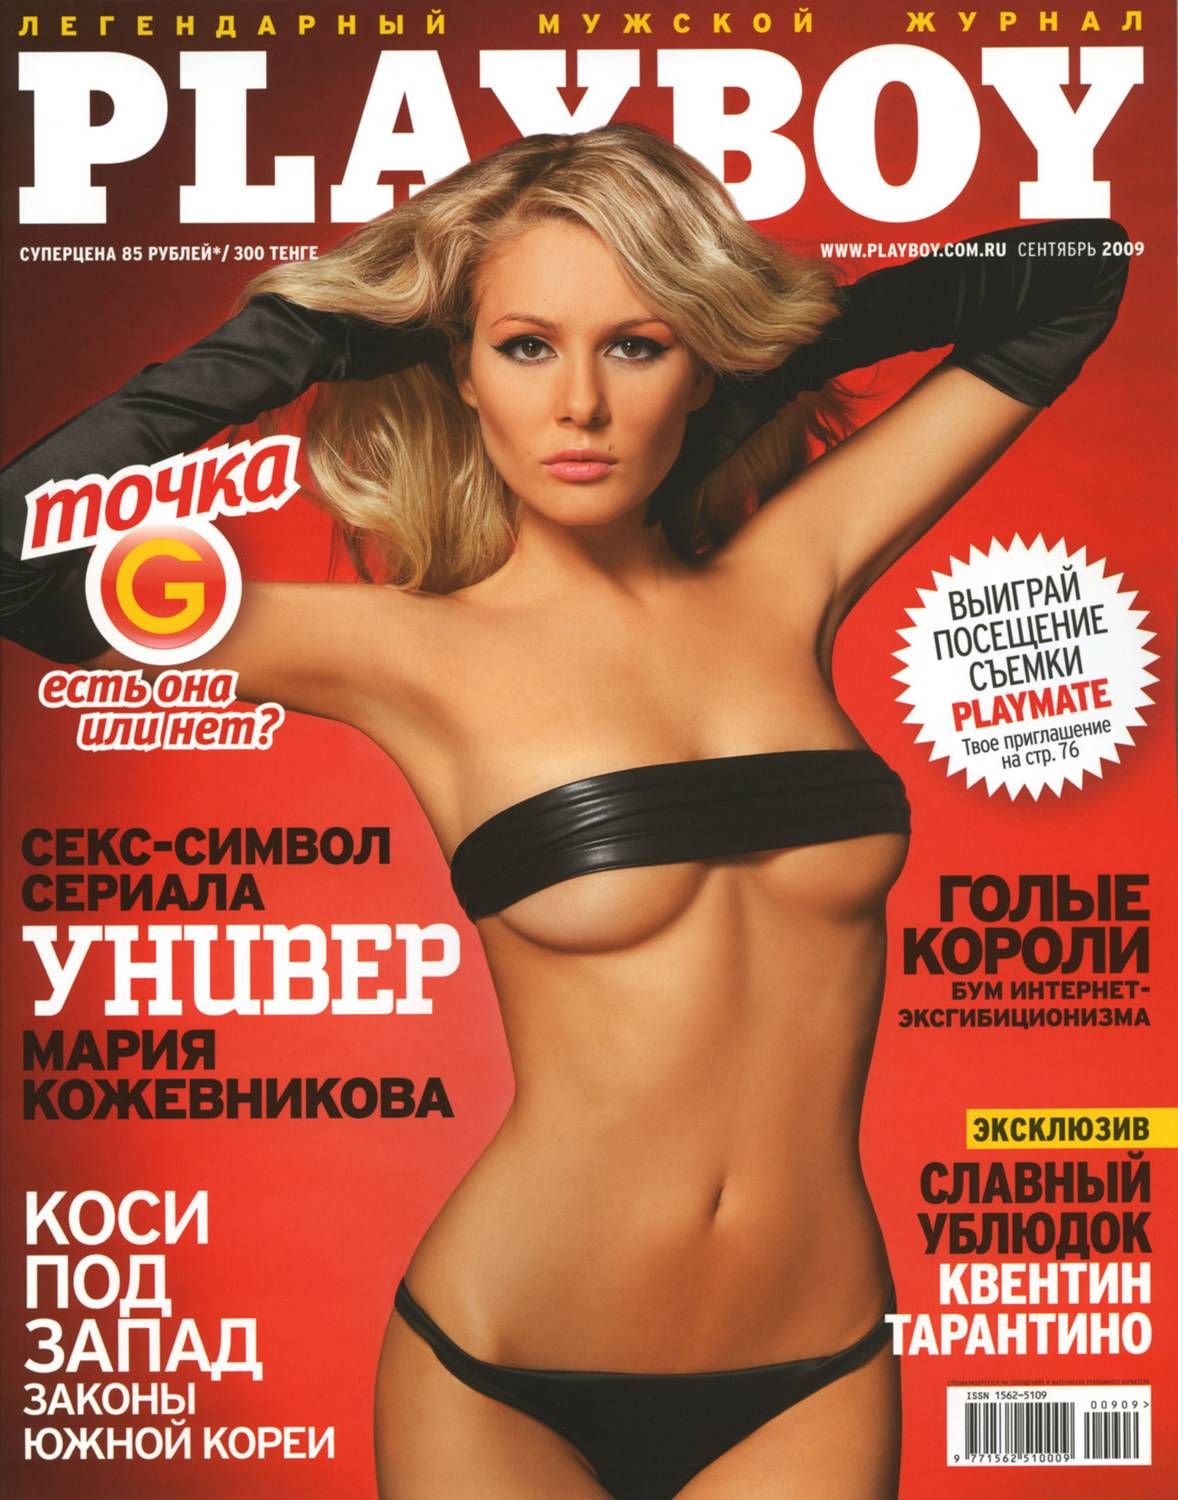 Маша кожевникова голая порно - фото секс и порно massage-couples.ru